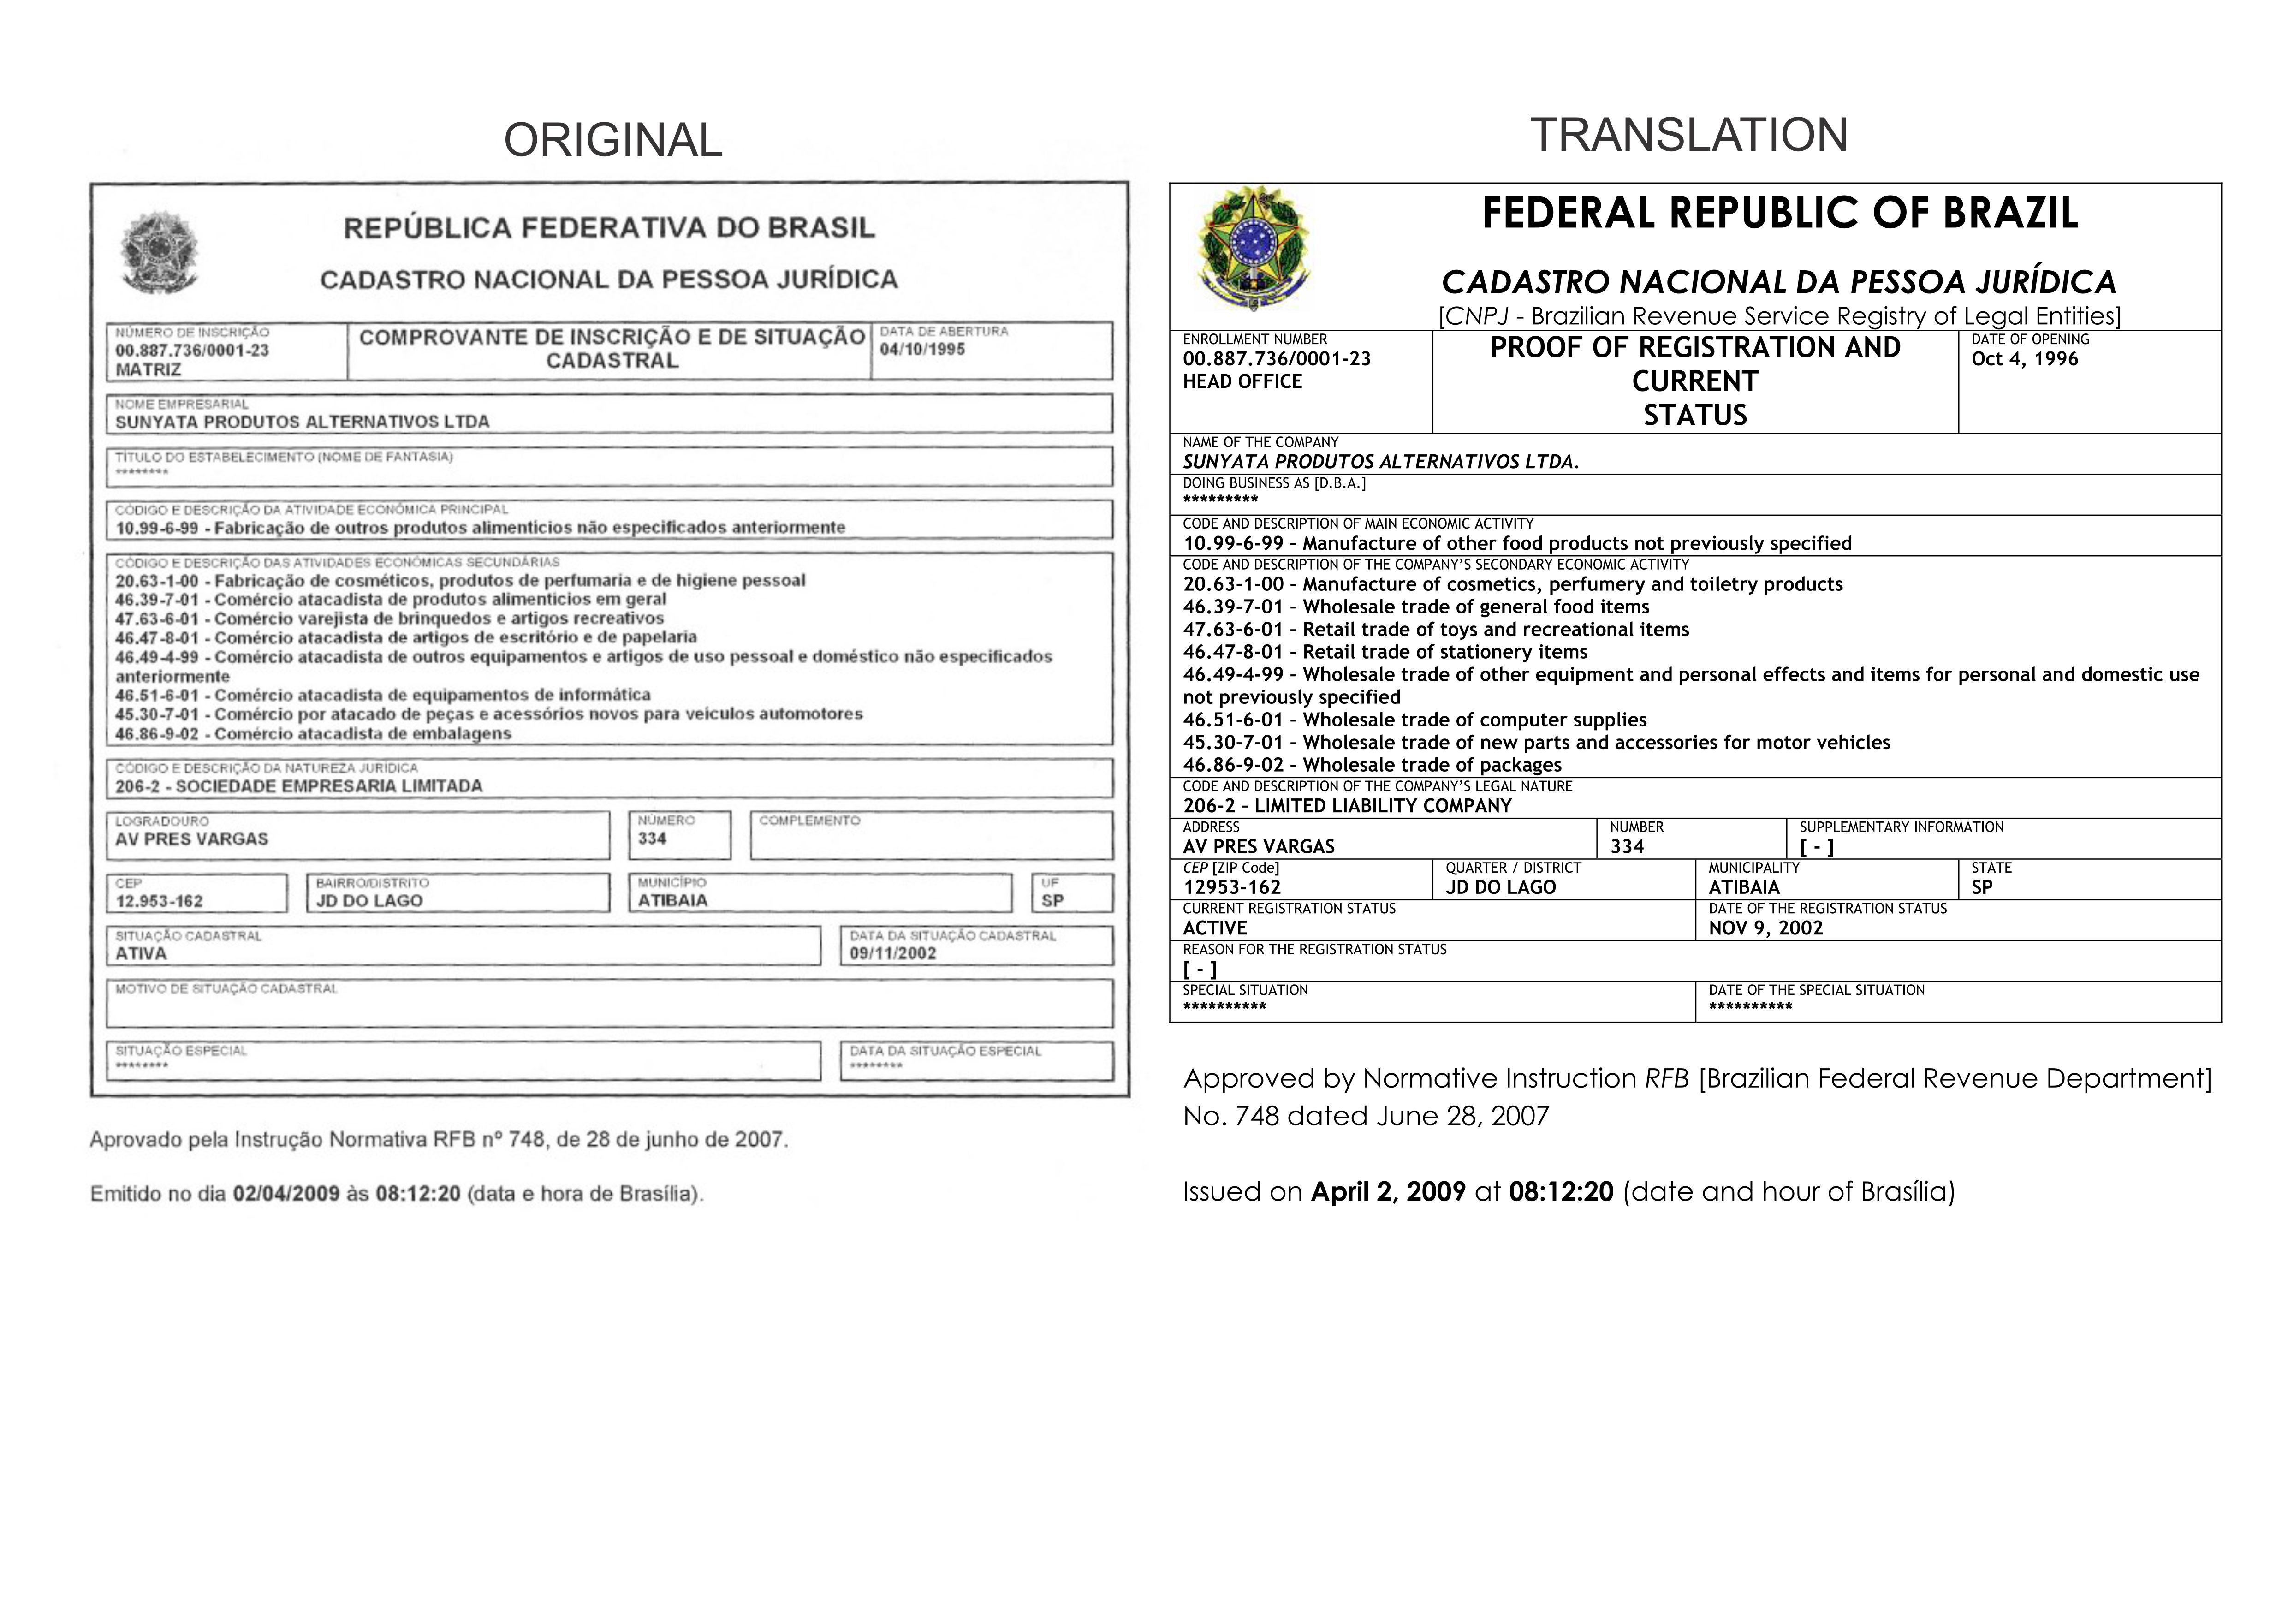 CNPJ - Brazilian Revenue Service Registry of Legal Entities